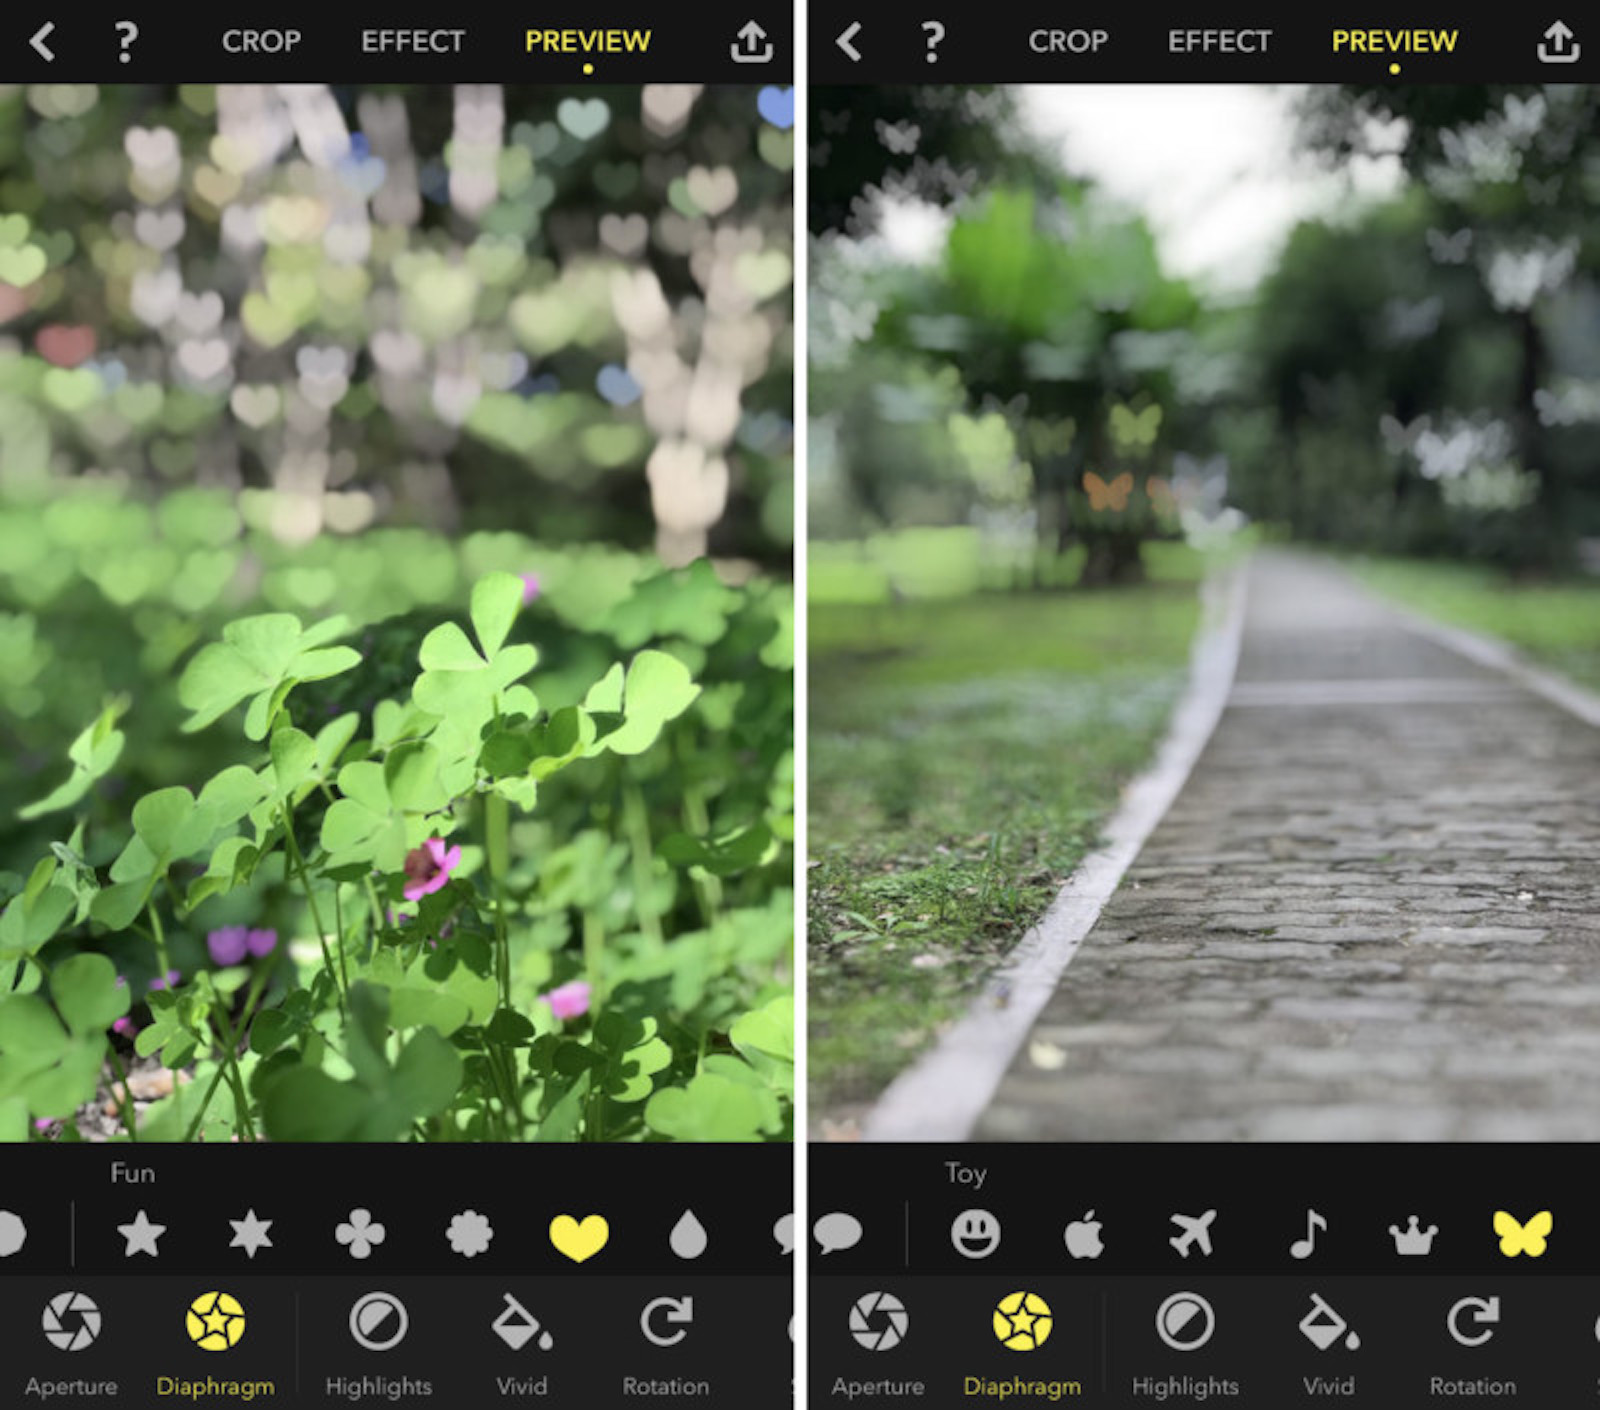 Migliora le tue foto con iPhone: le app per scatti perfetti